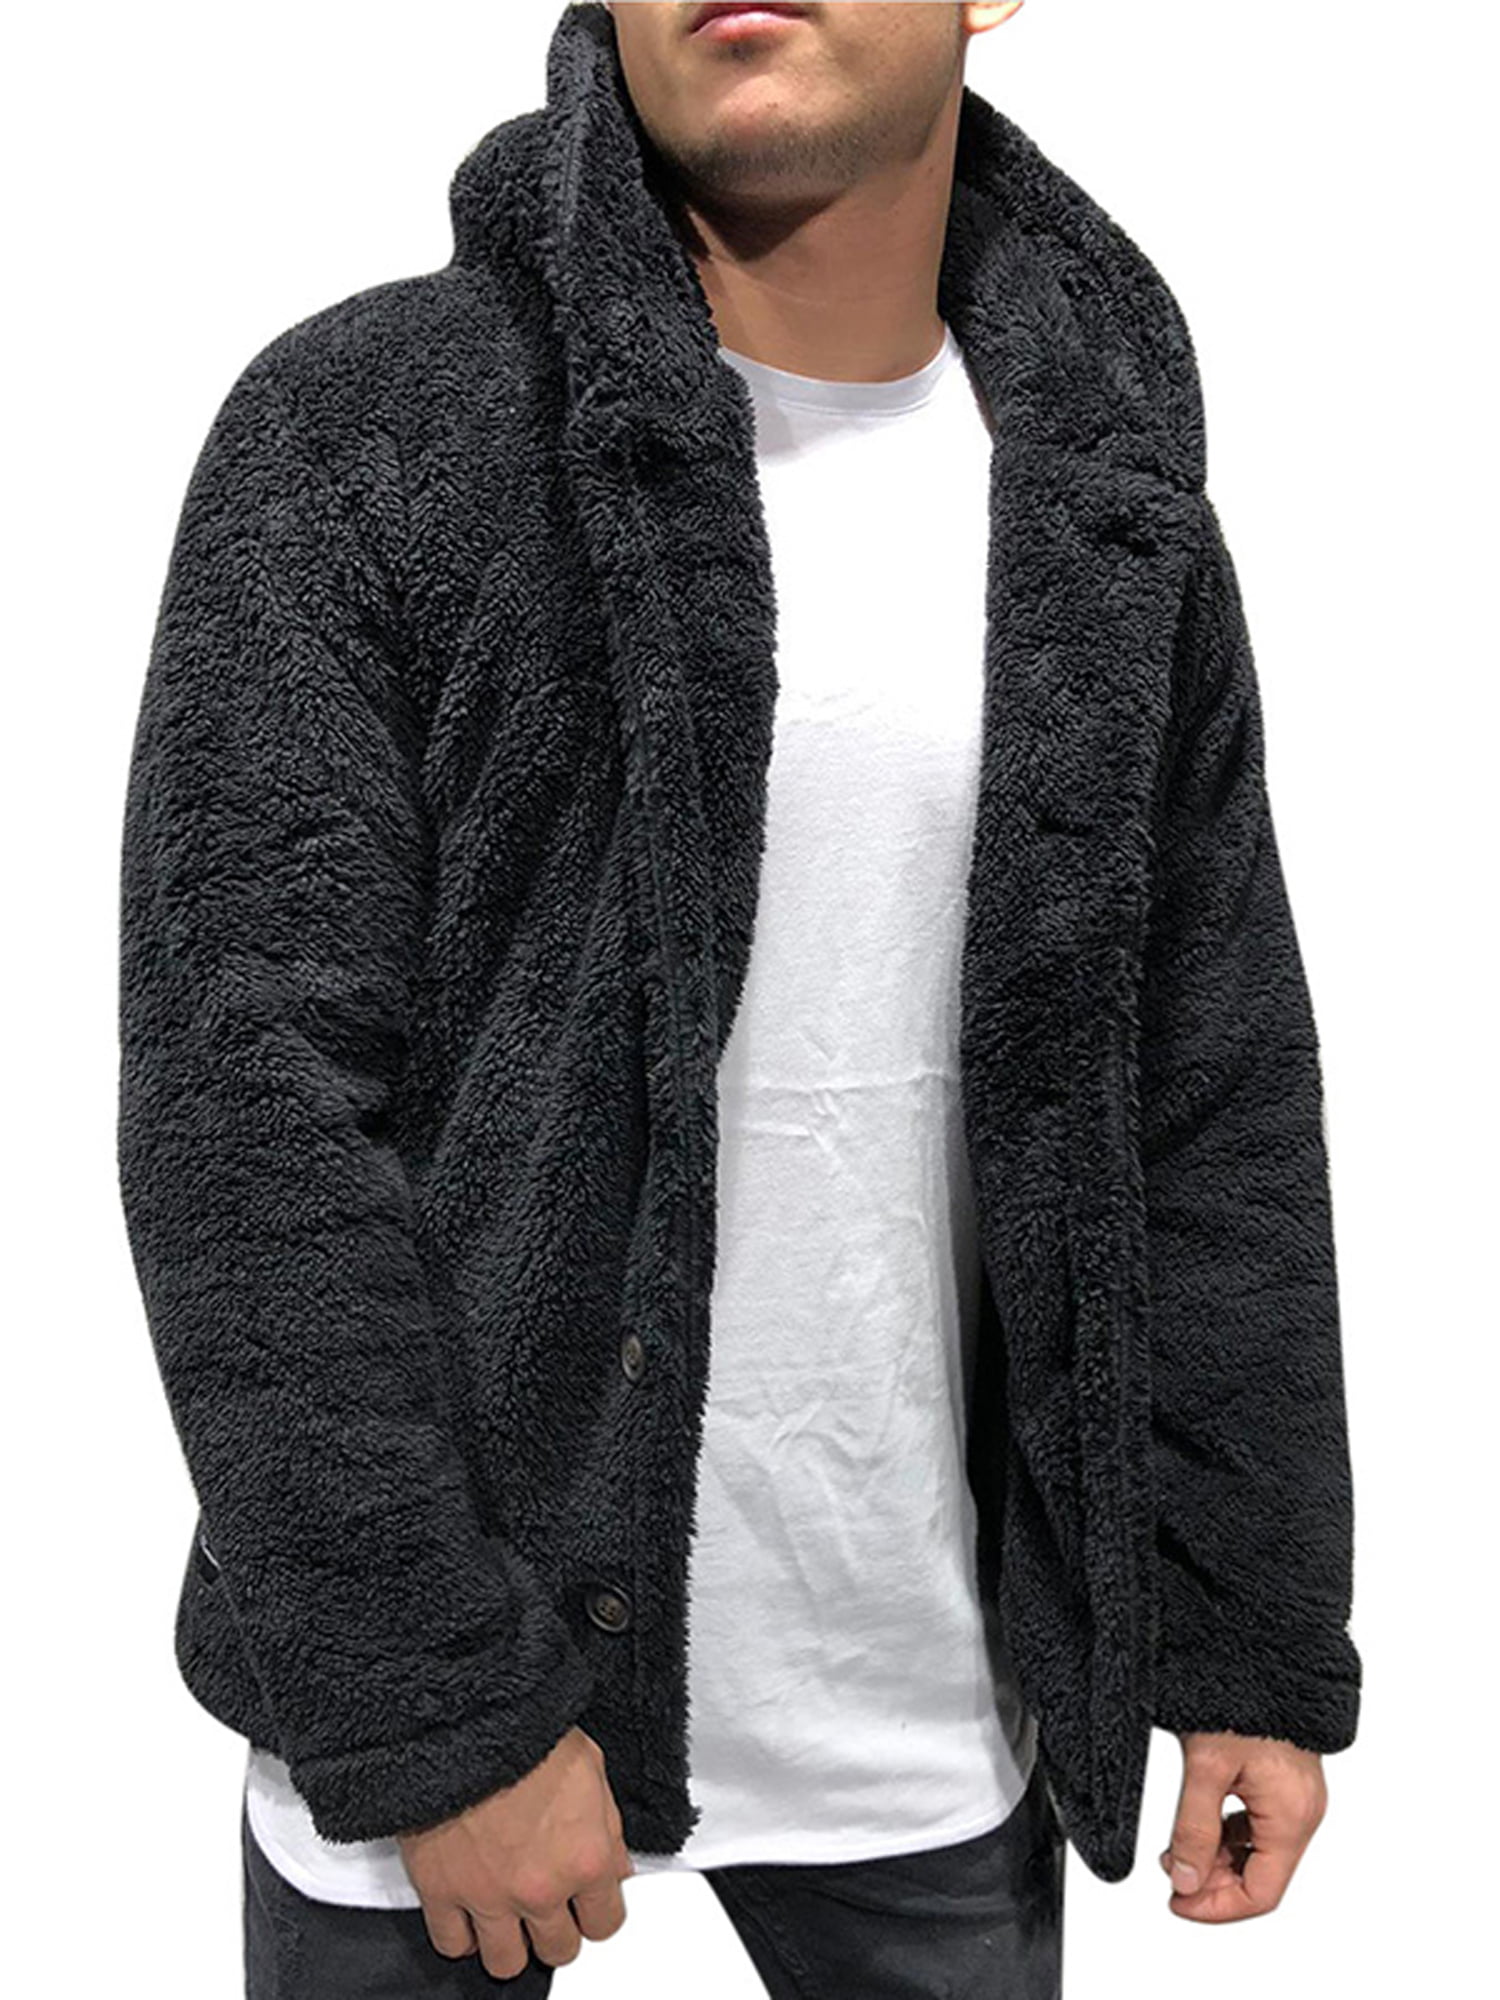 Men's Winter Thick Hoodies Tops Fluffy Fleece Fur Jacket Hooded Coat ...